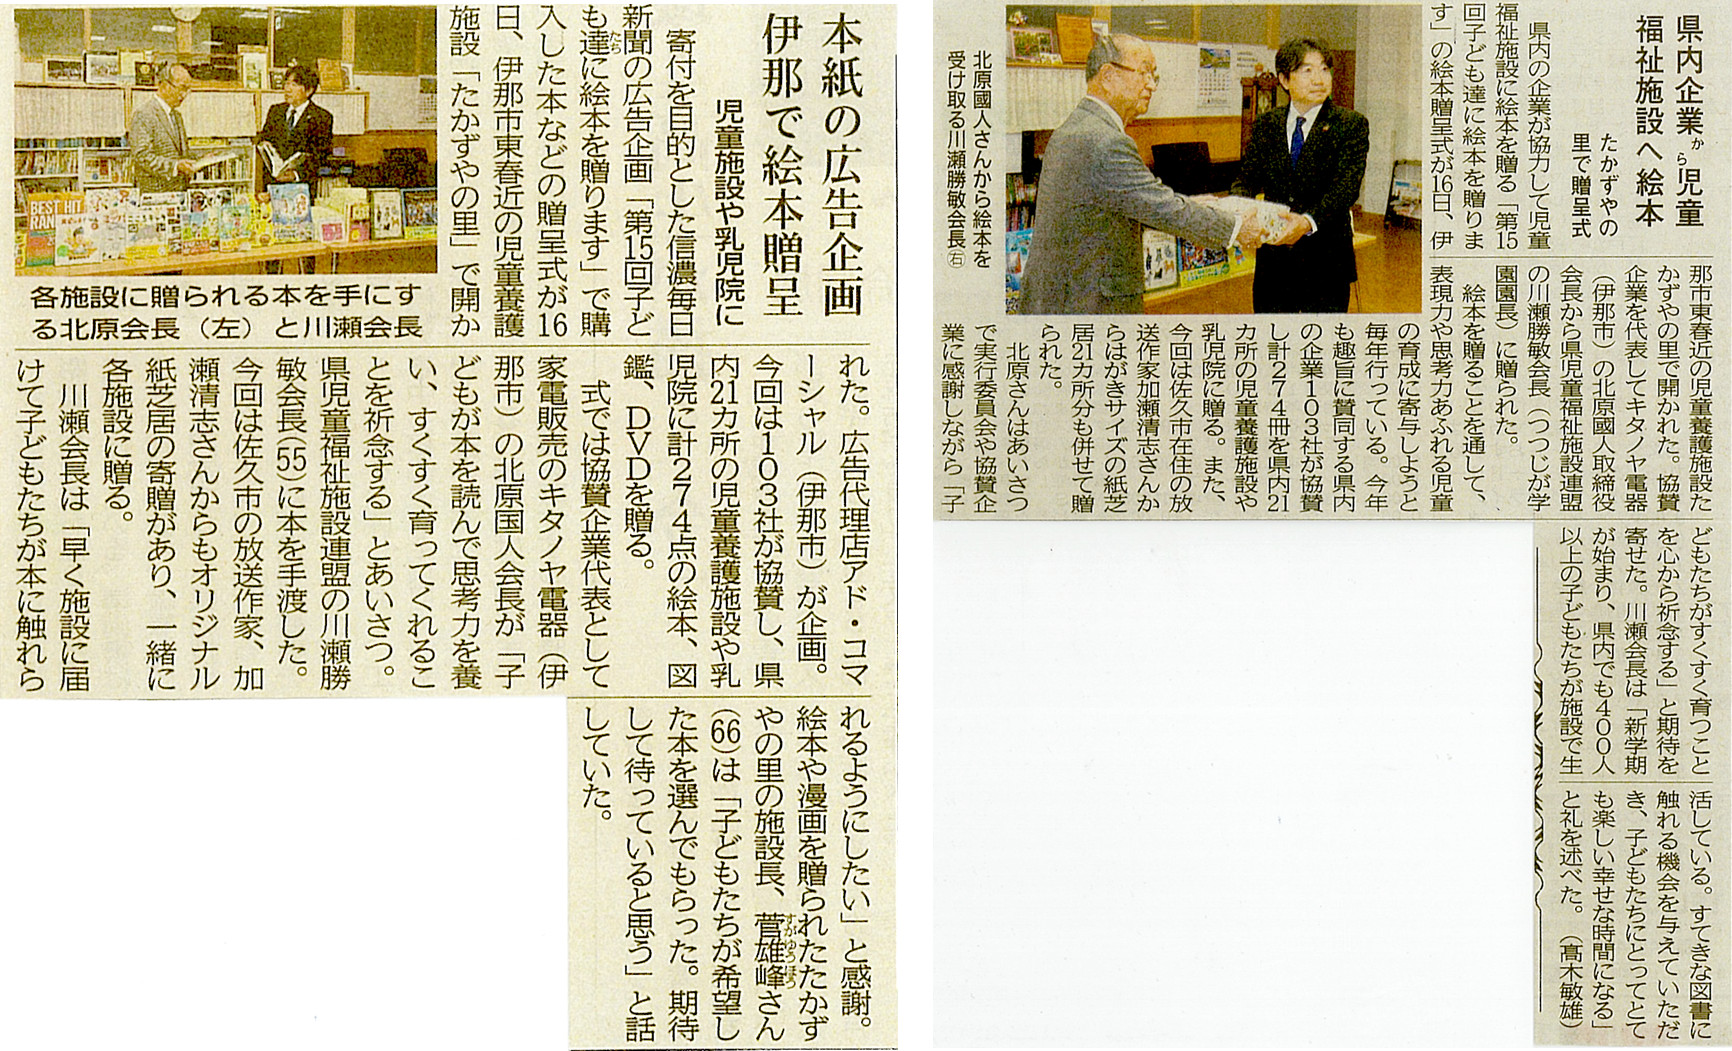 信濃毎日新聞、長野日報、掲載紙